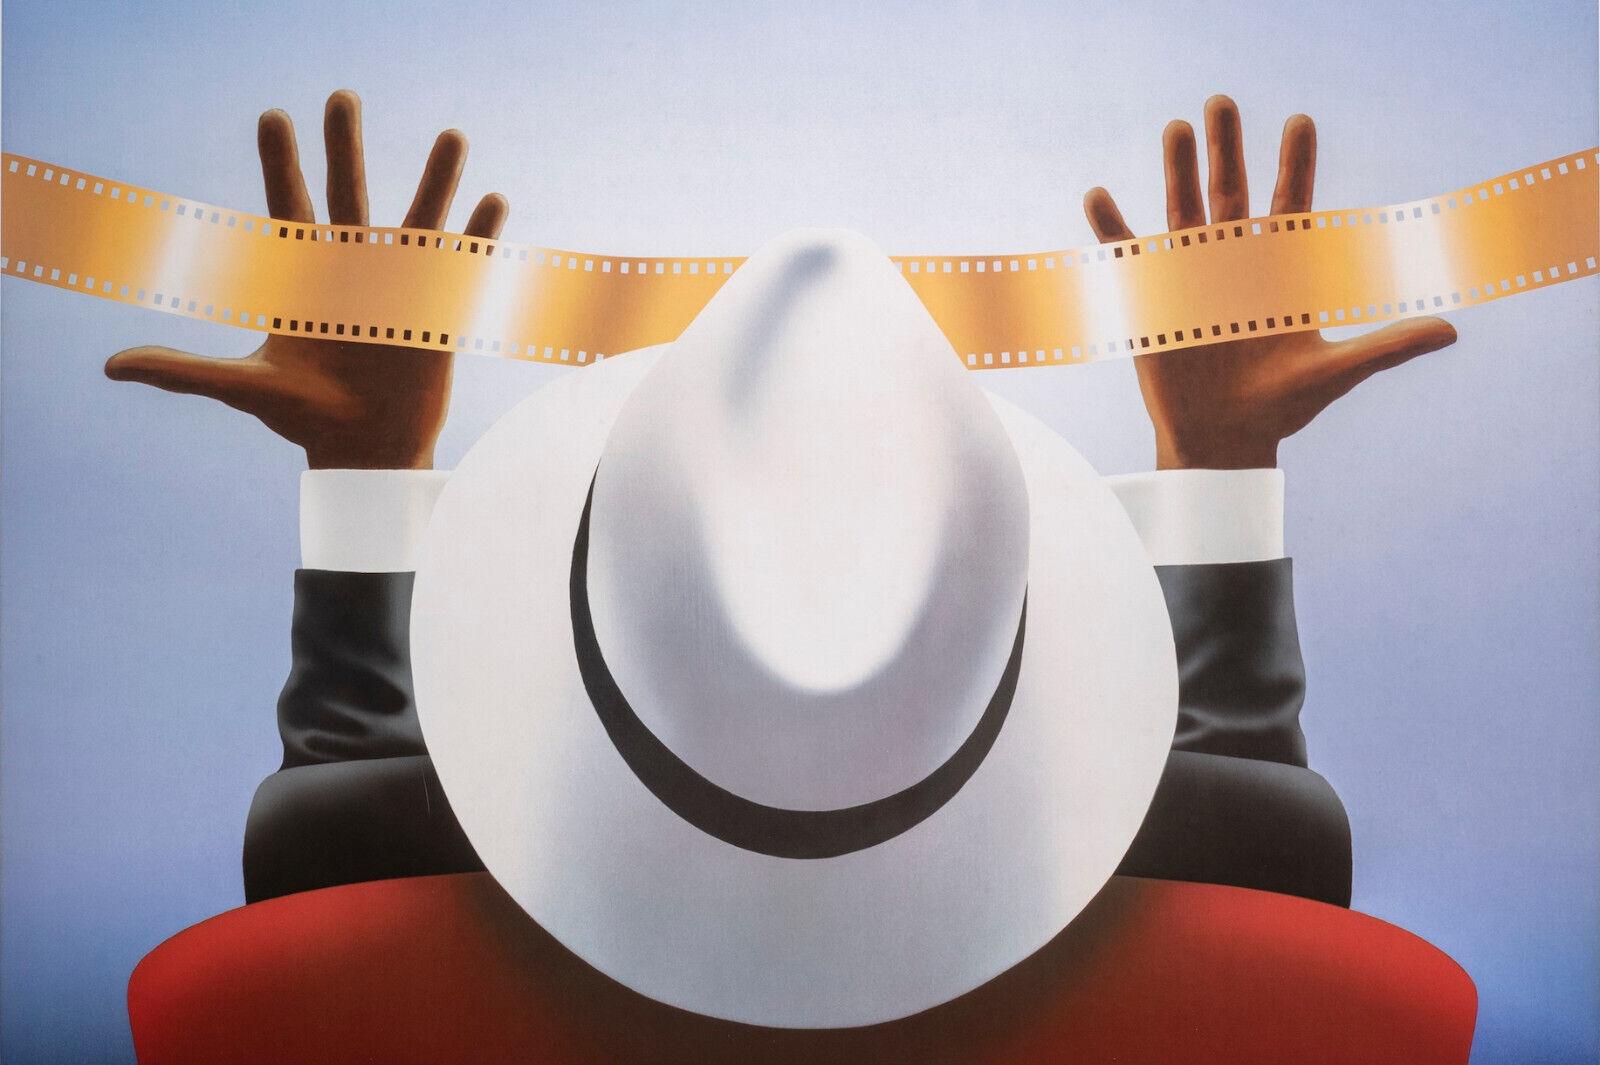 Originalplakat-Razzia-Internationale Filmfestspiele-Cannes, 2004

Projekt für das offizielle Plakat der Filmfestspiele von Cannes 2004. 

Weitere Einzelheiten:

MATERIALIEN und TECHNIKEN: Farblithographie auf Papier

Rahmung: